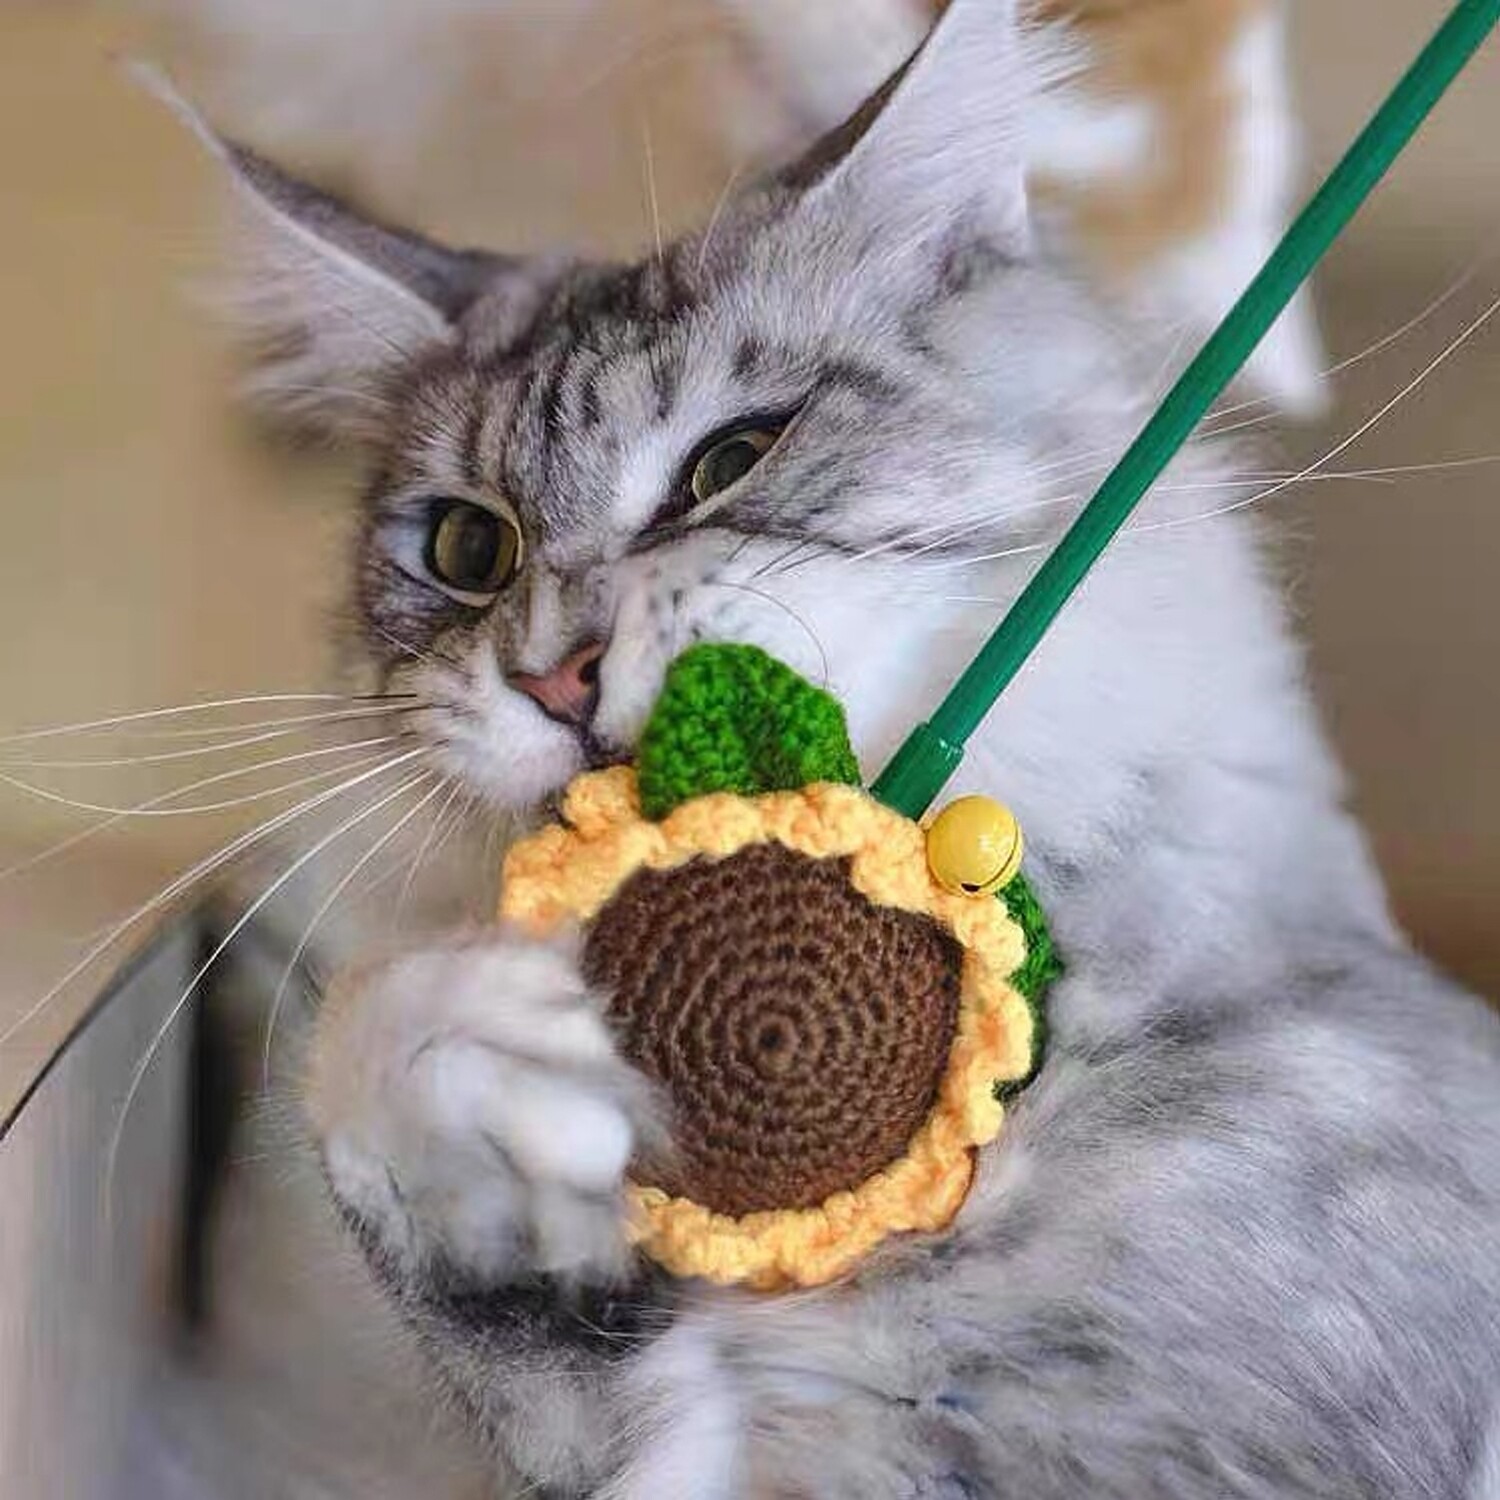 Meowcard sunflower bell catnip teaser stick 向日葵针织铃铛猫薄荷逗猫棒